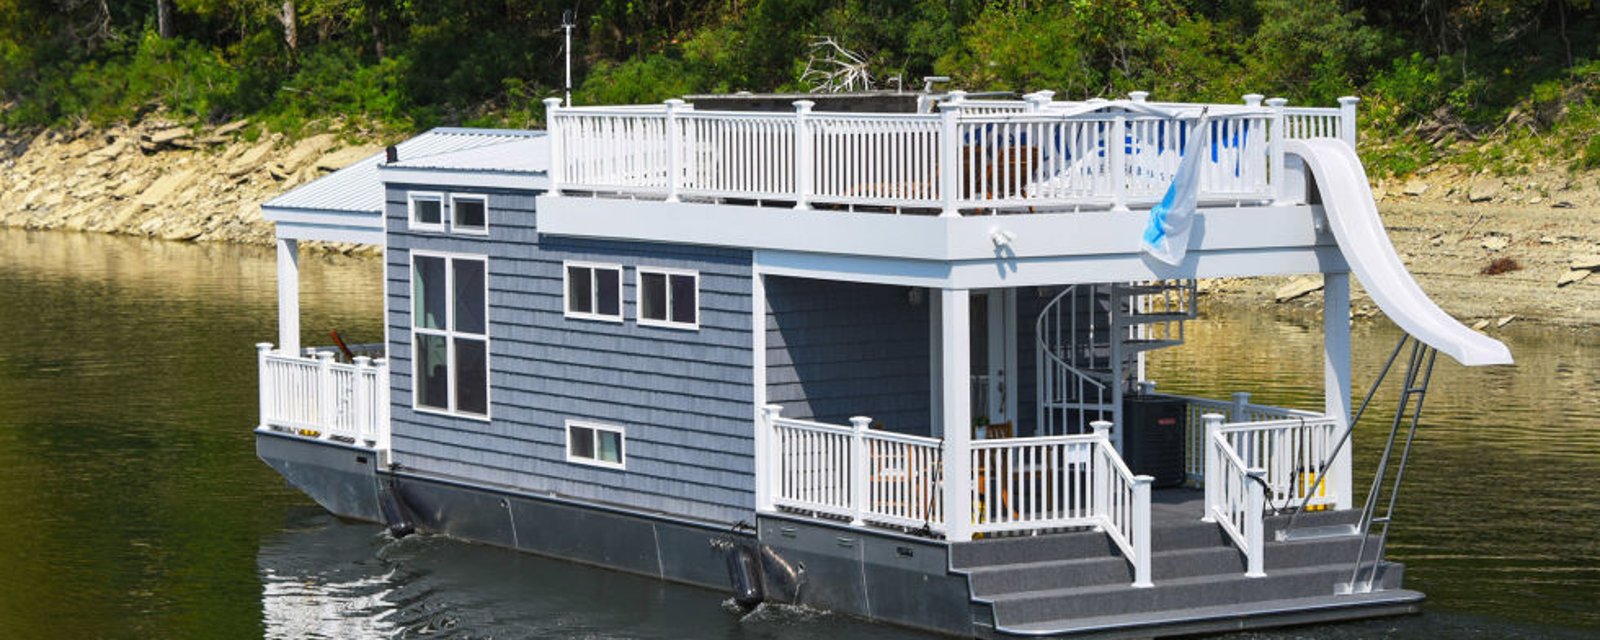 Cette mini-maison sur l'eau est parfaite pour les promenades en bateau!